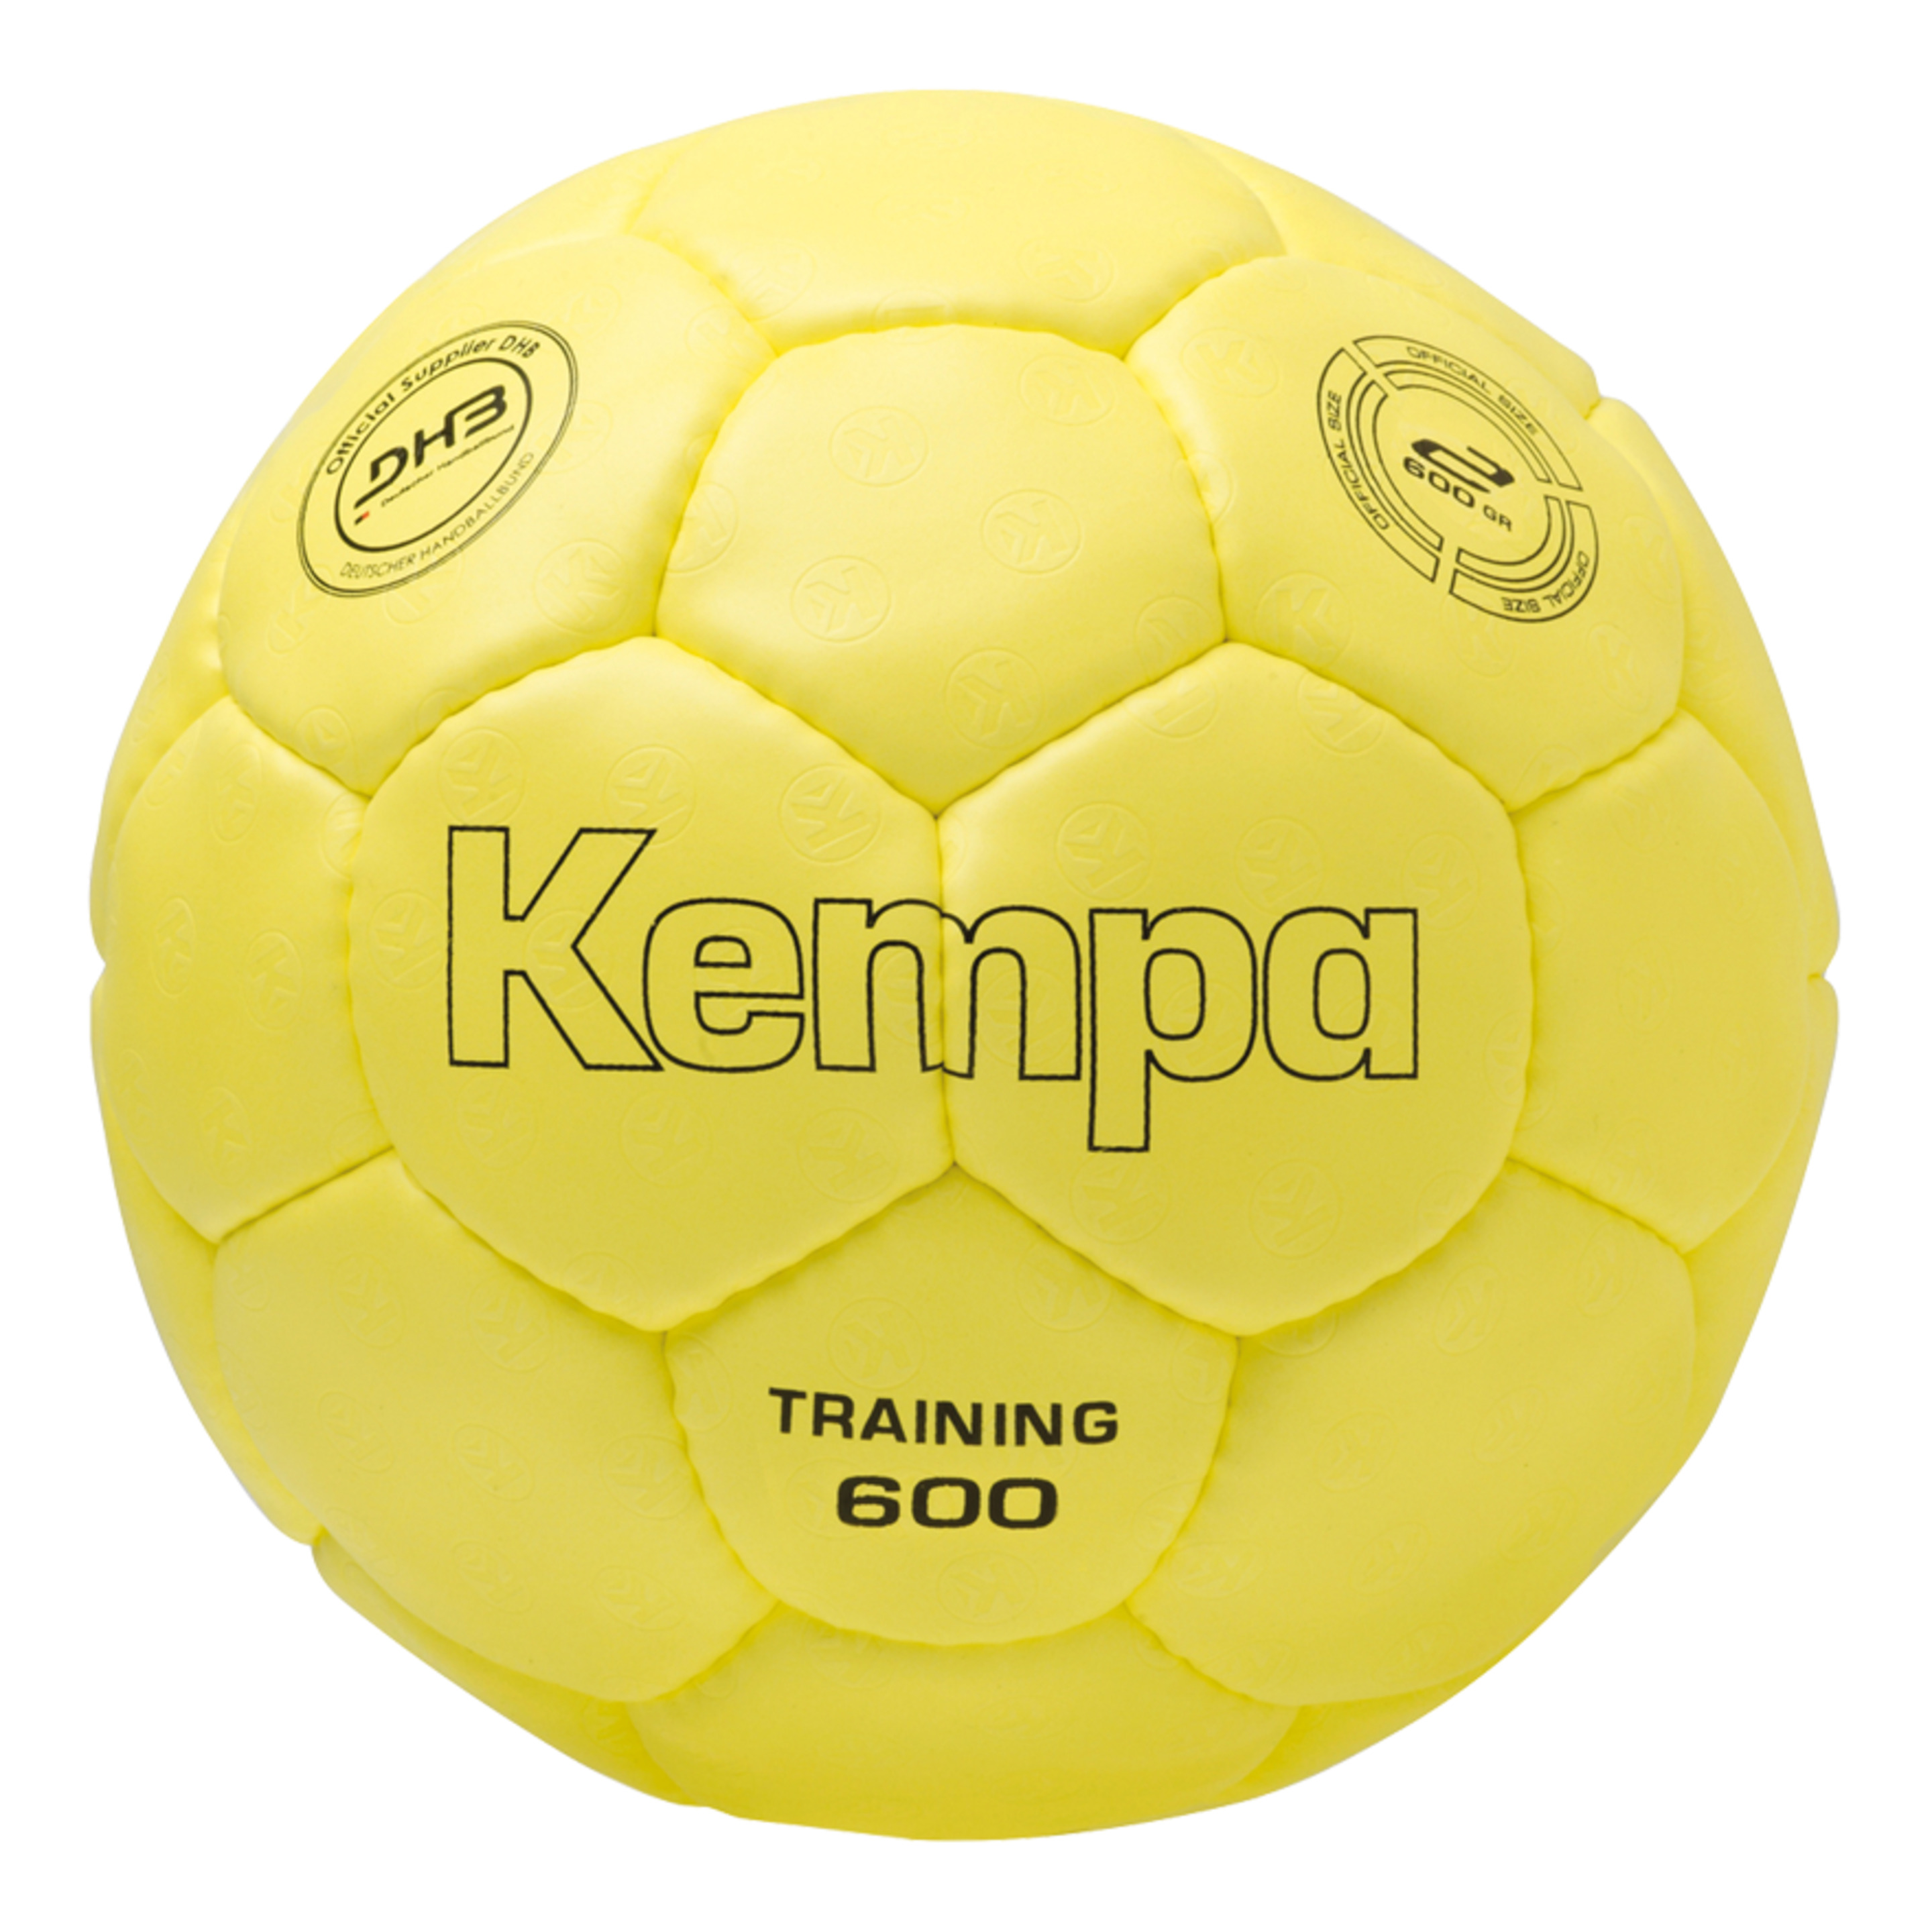 Training 600 Amarillo Kempa - amarillo-fluor - 